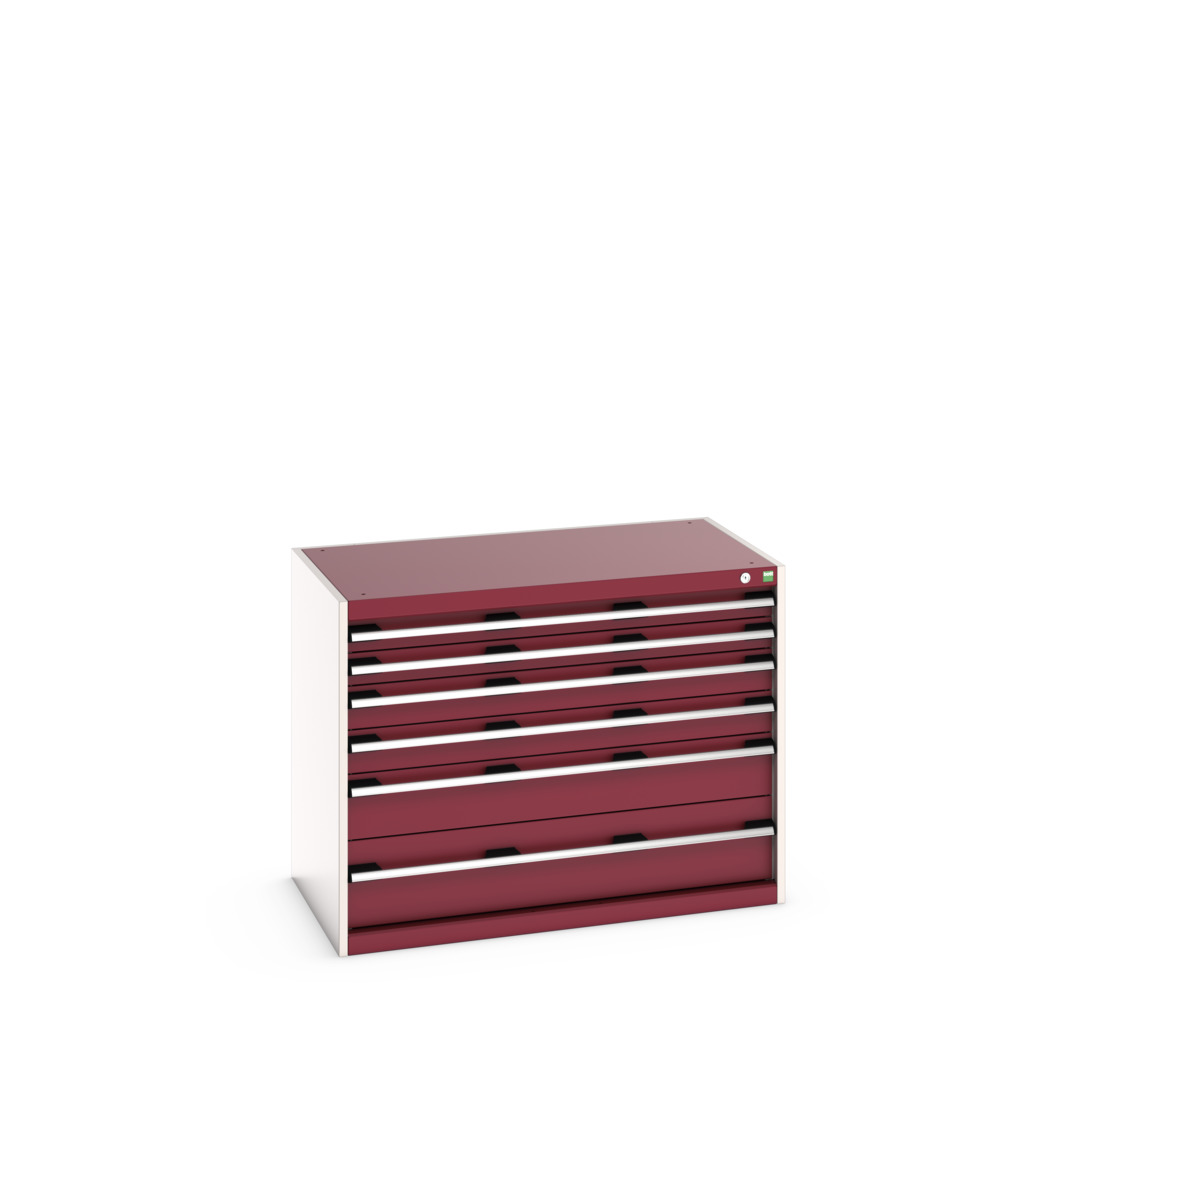 40021191.24V - cubio drawer cabinet